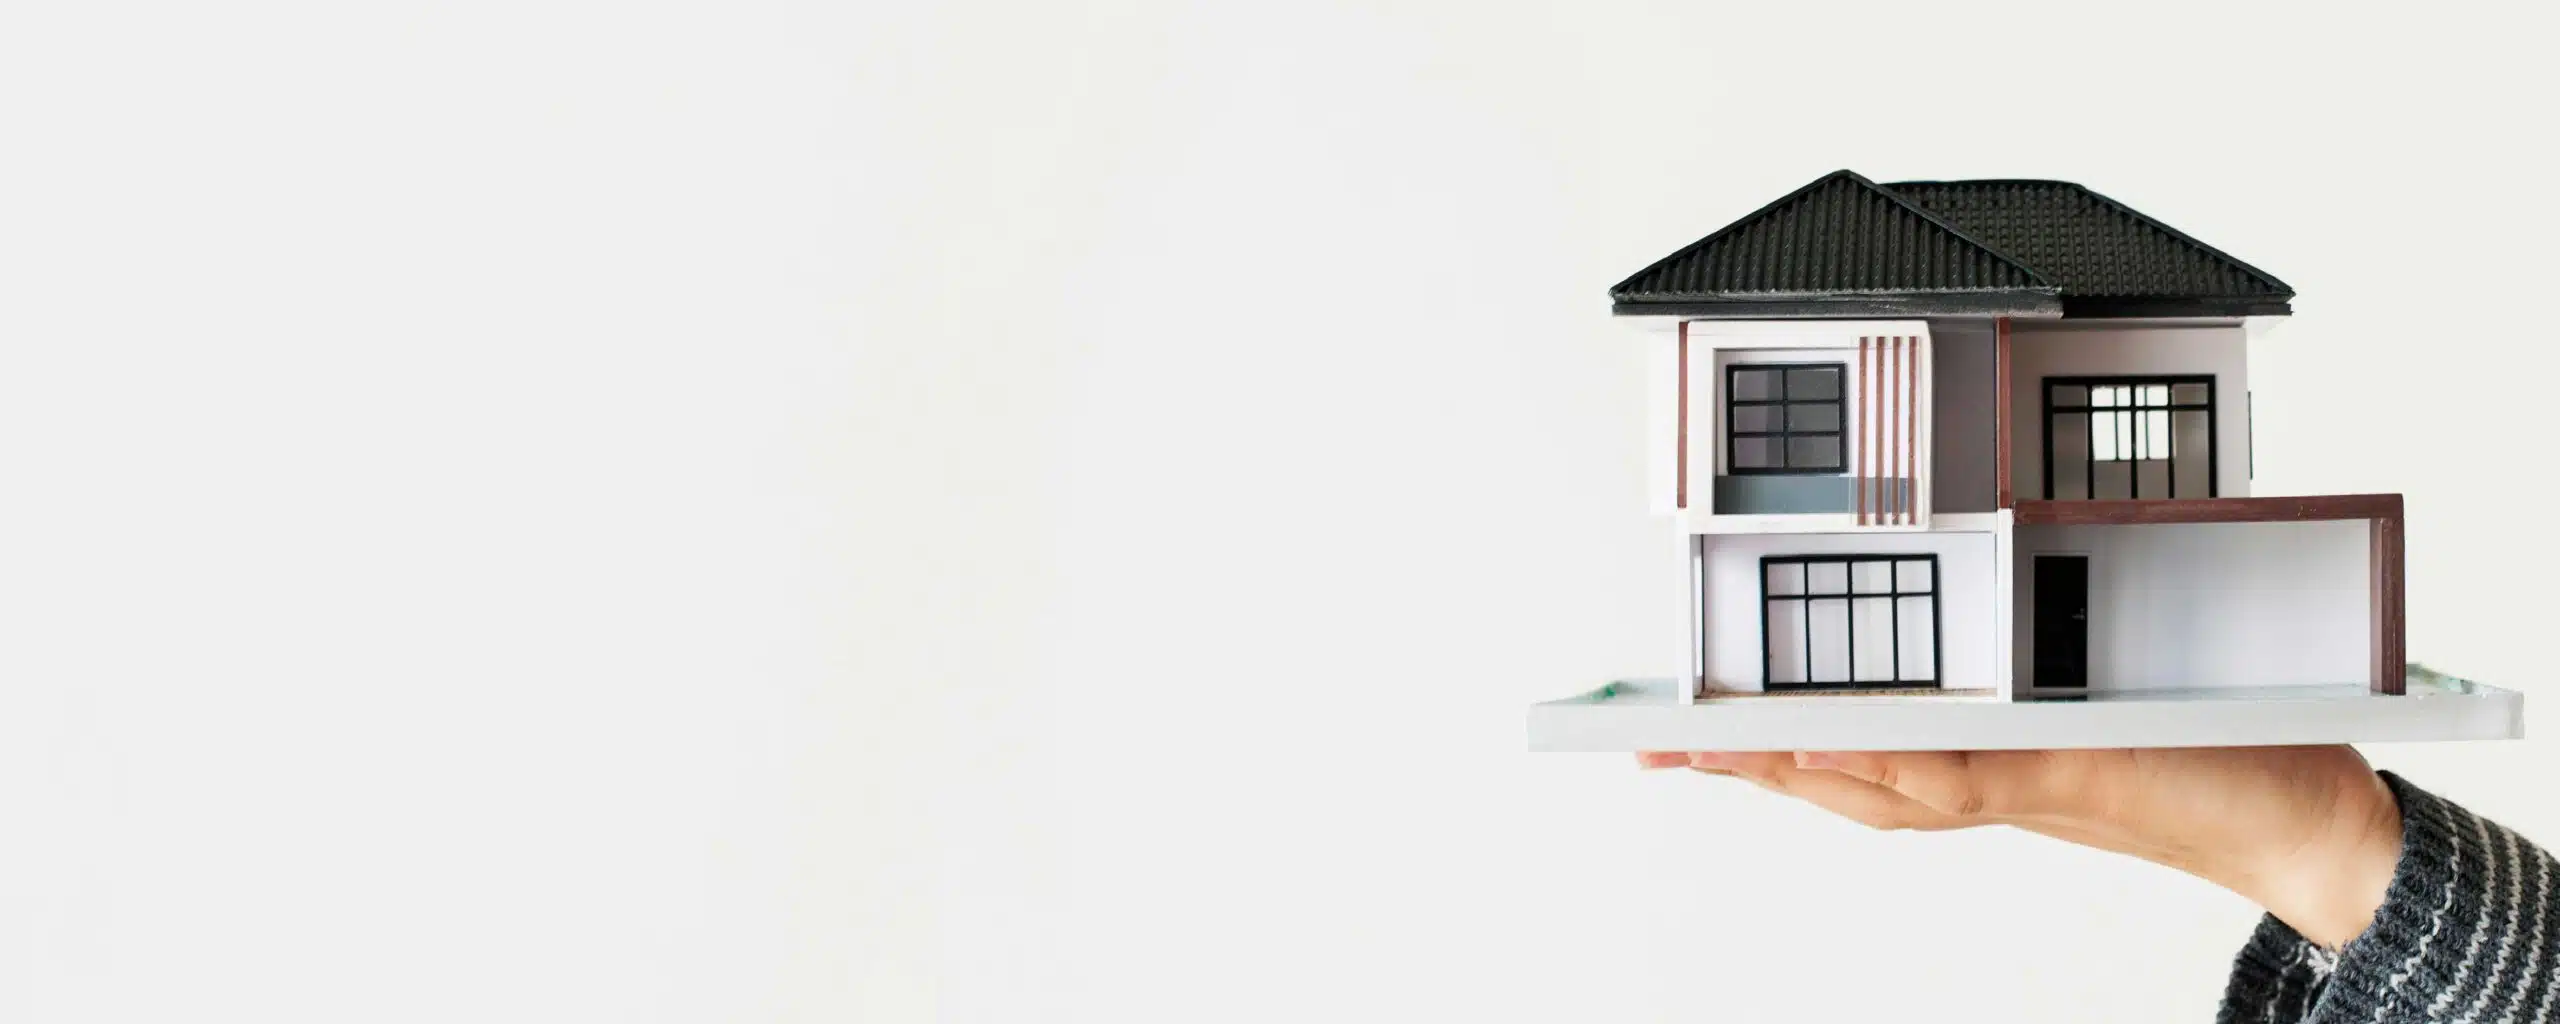 5 грешки, които да избягваме при покупка на имот от строител